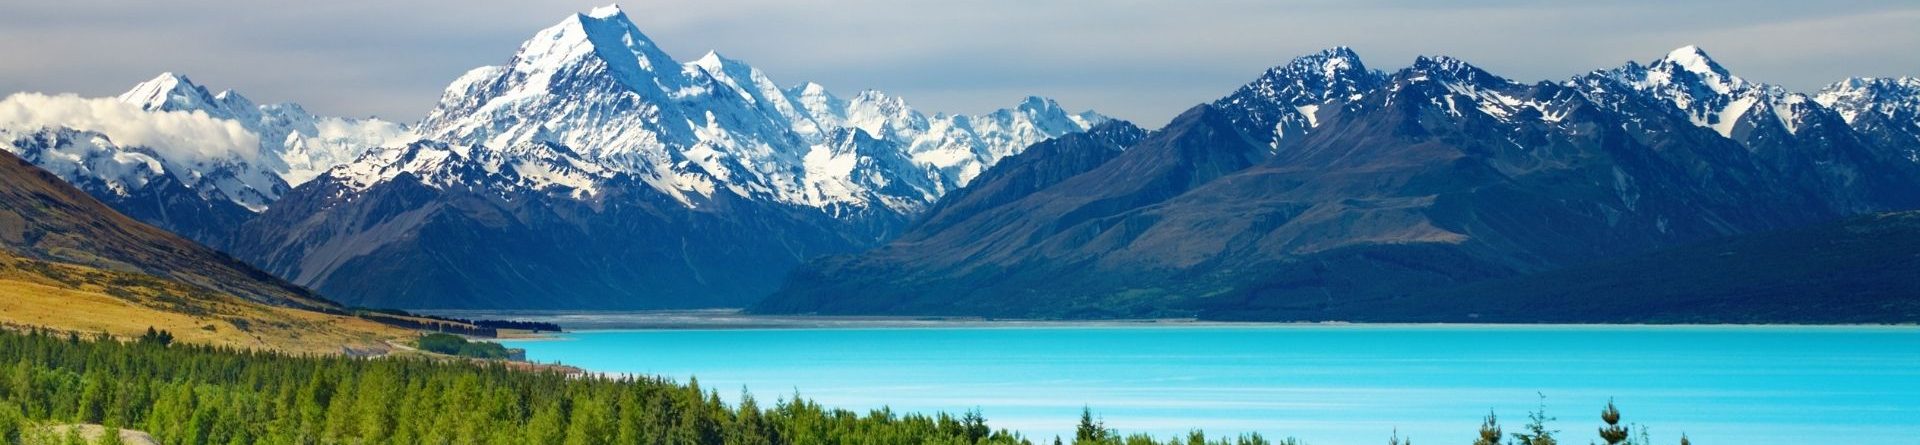 Nova Zelândia é considerada o segundo país mais bonito do mundo